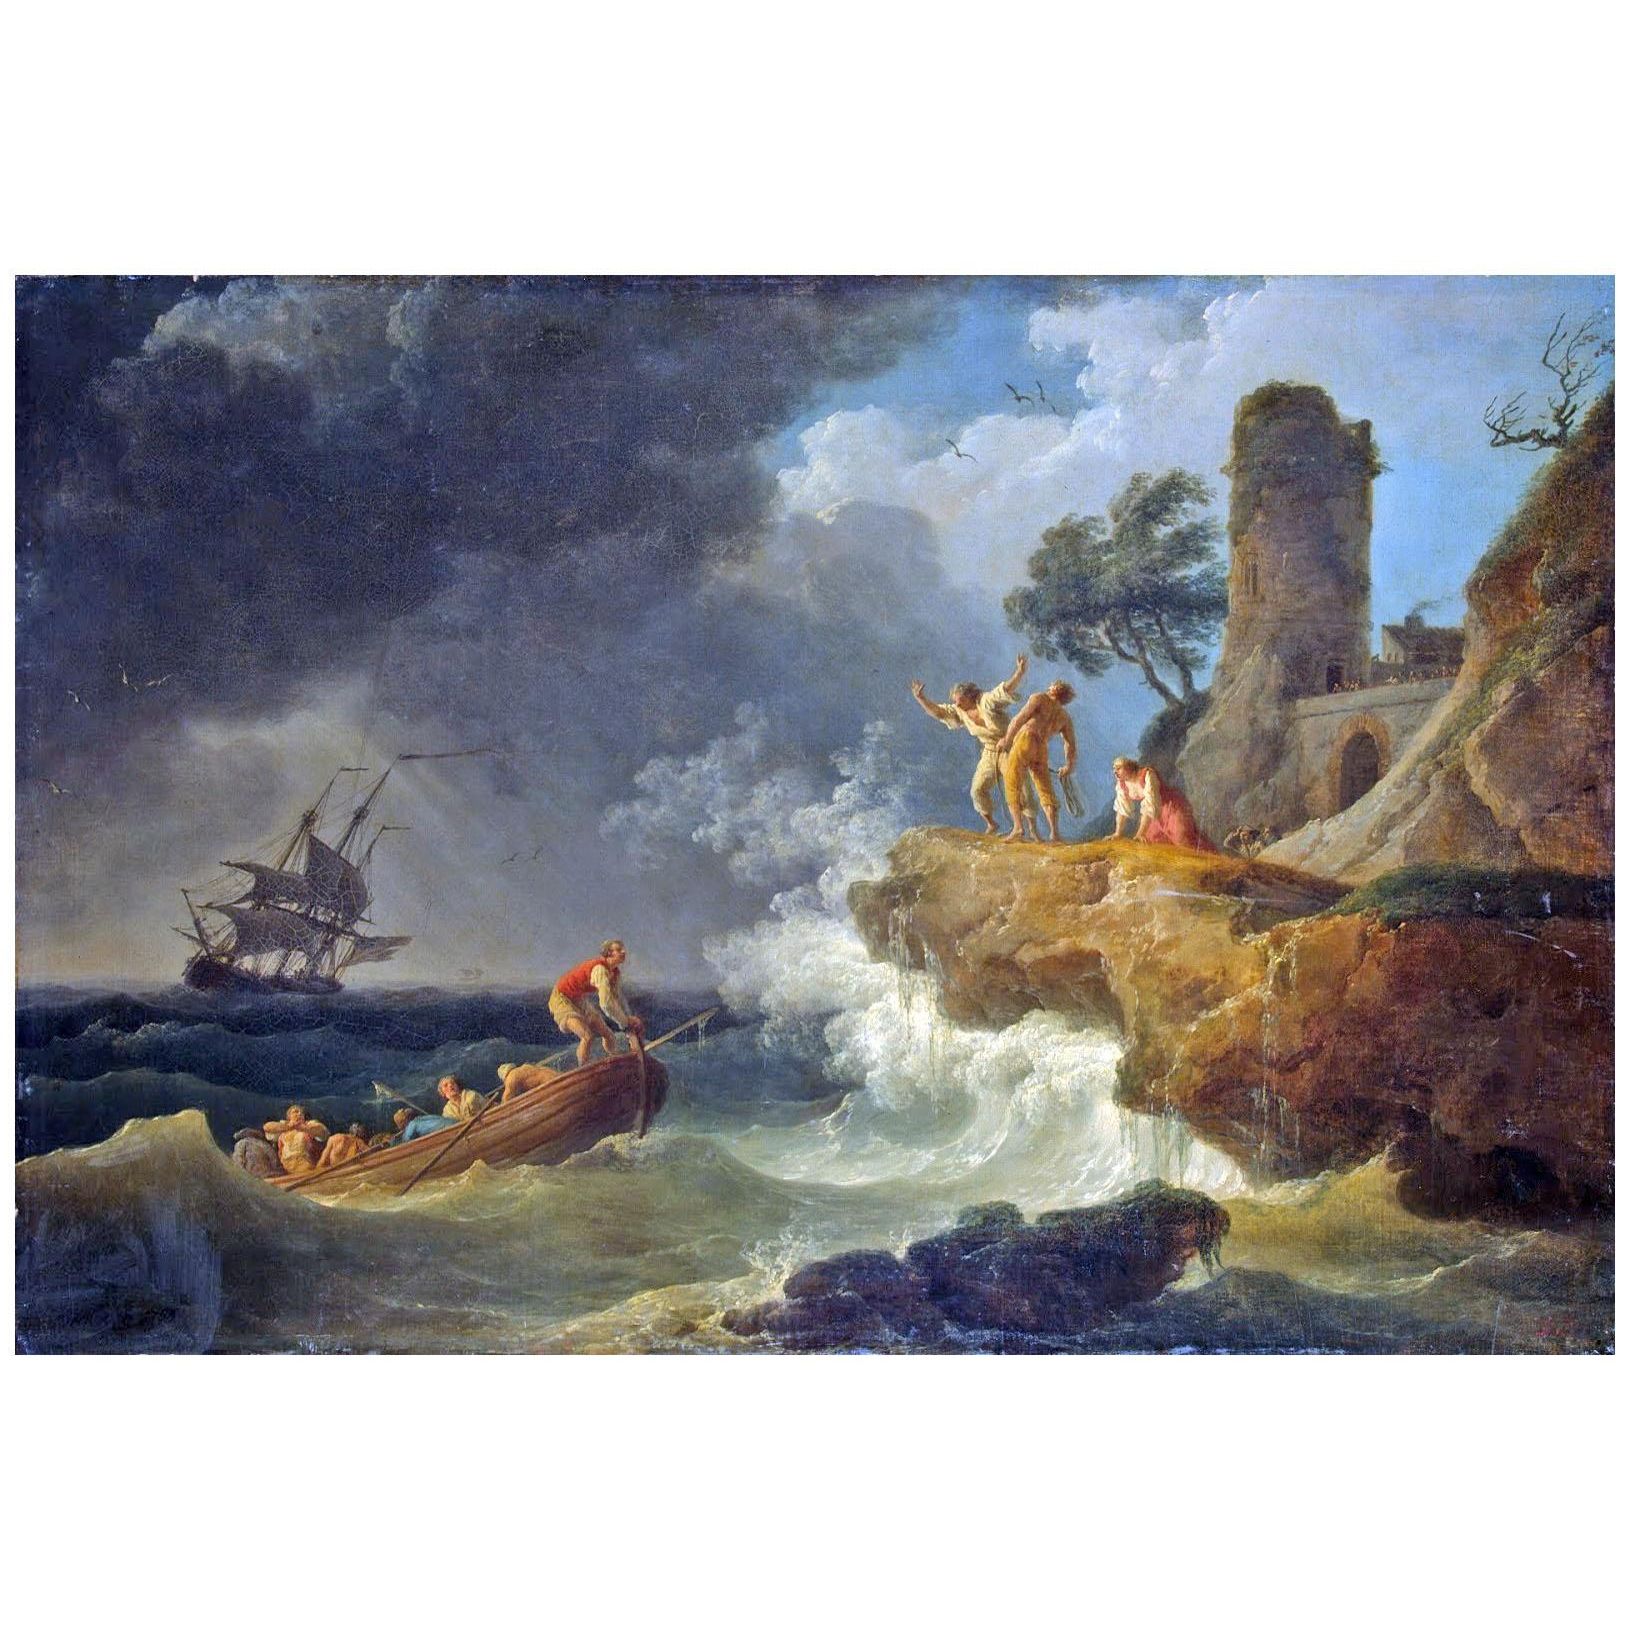 Joseph Vernet. Tempête au de la côte rocheuse. 1763. Hermitage Museum